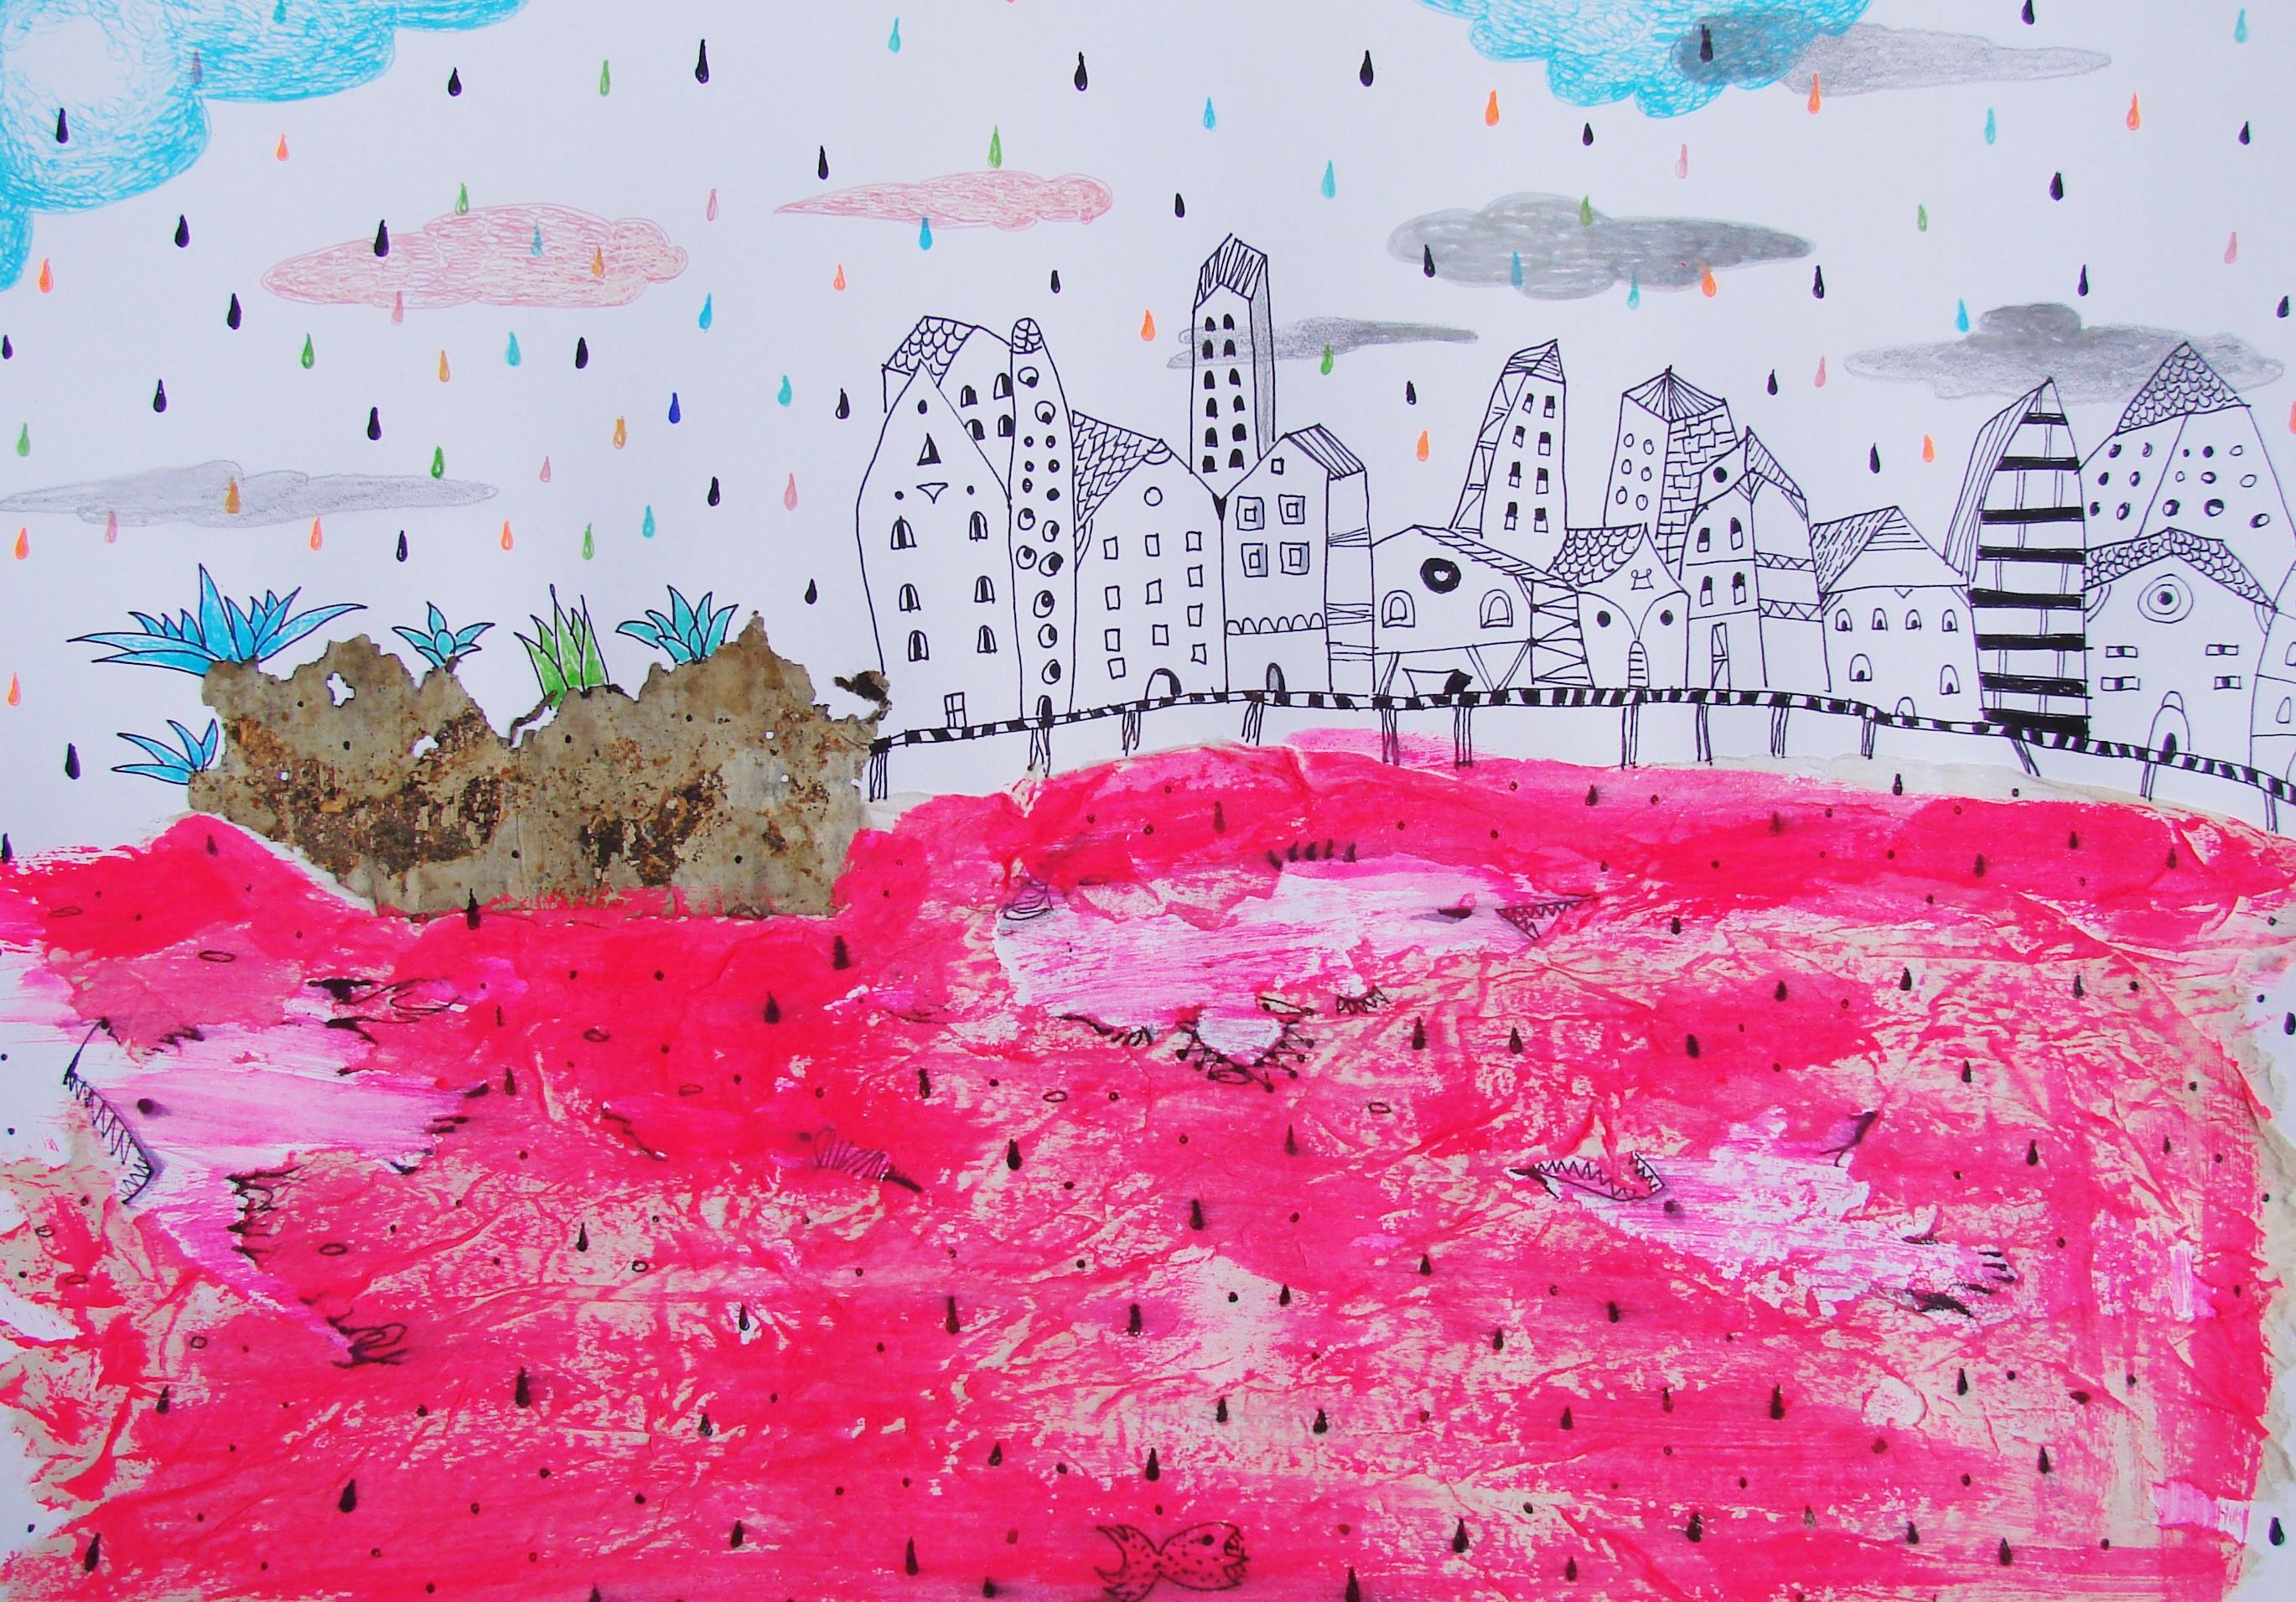 Dessins sur papier représentant la mer rouge - Contemporain, rose, onirique, figuratif - Art de Raluca Arnăutu